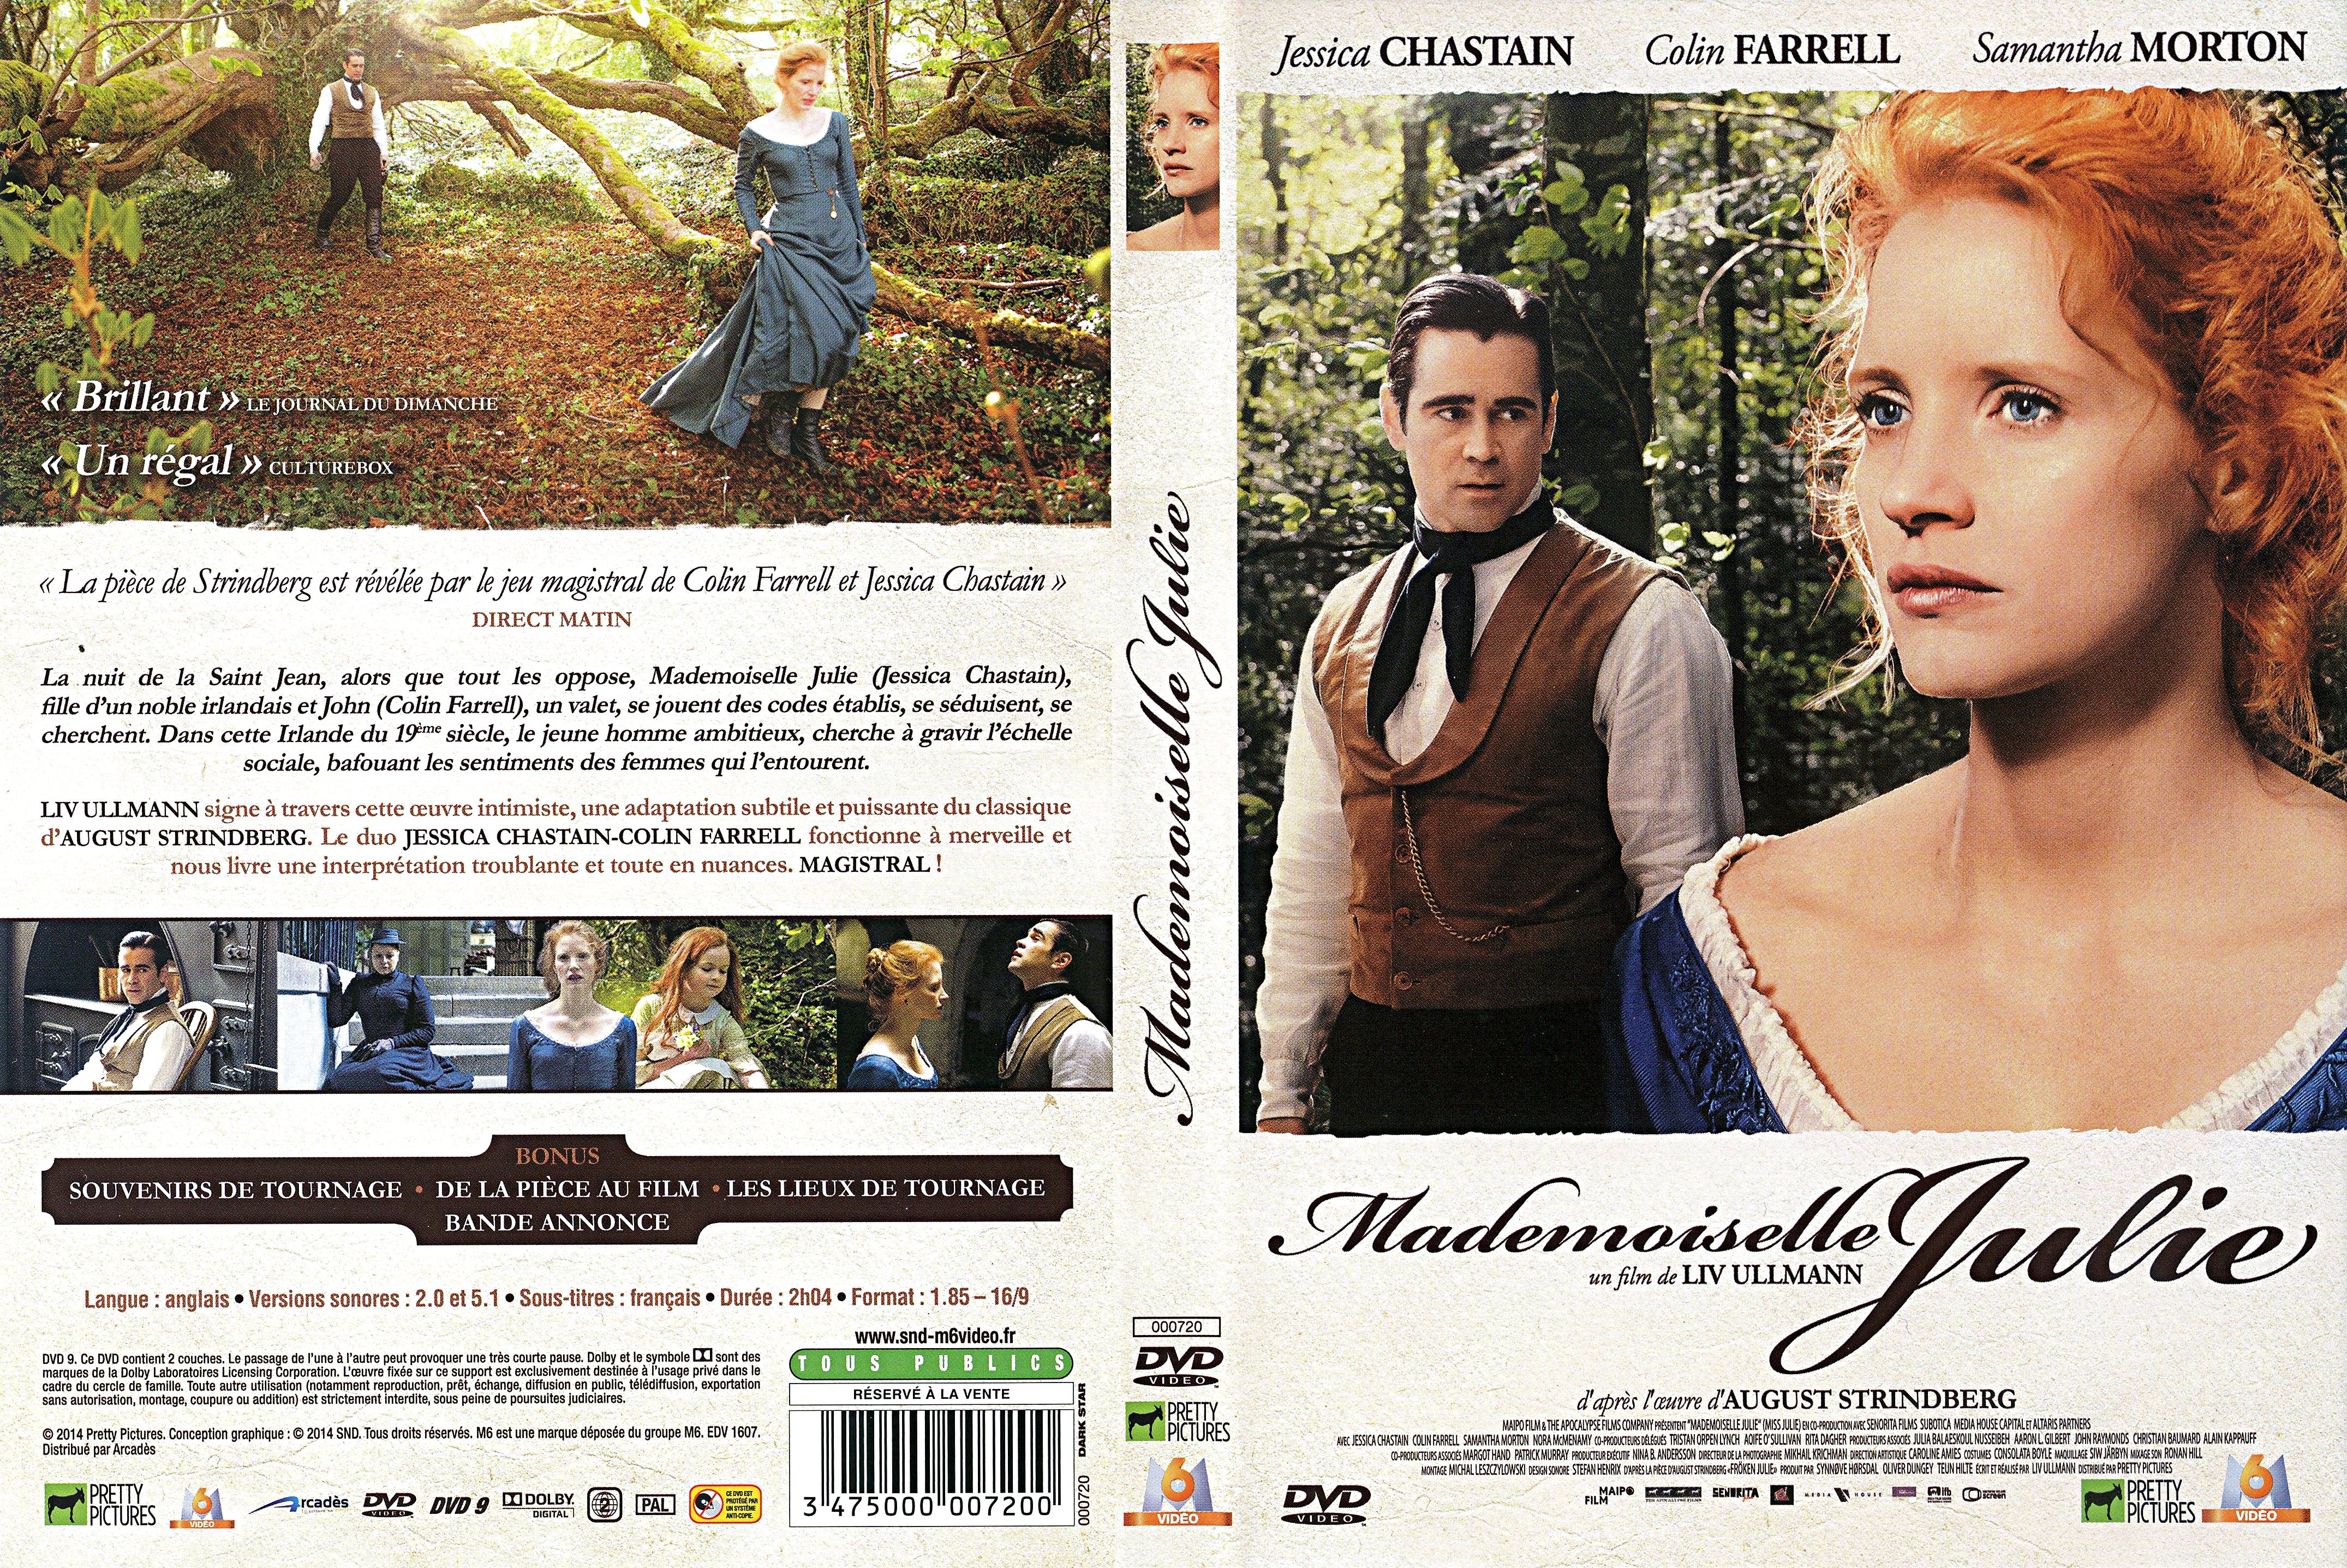 Jaquette DVD Mademoiselle Julie (2014) v2